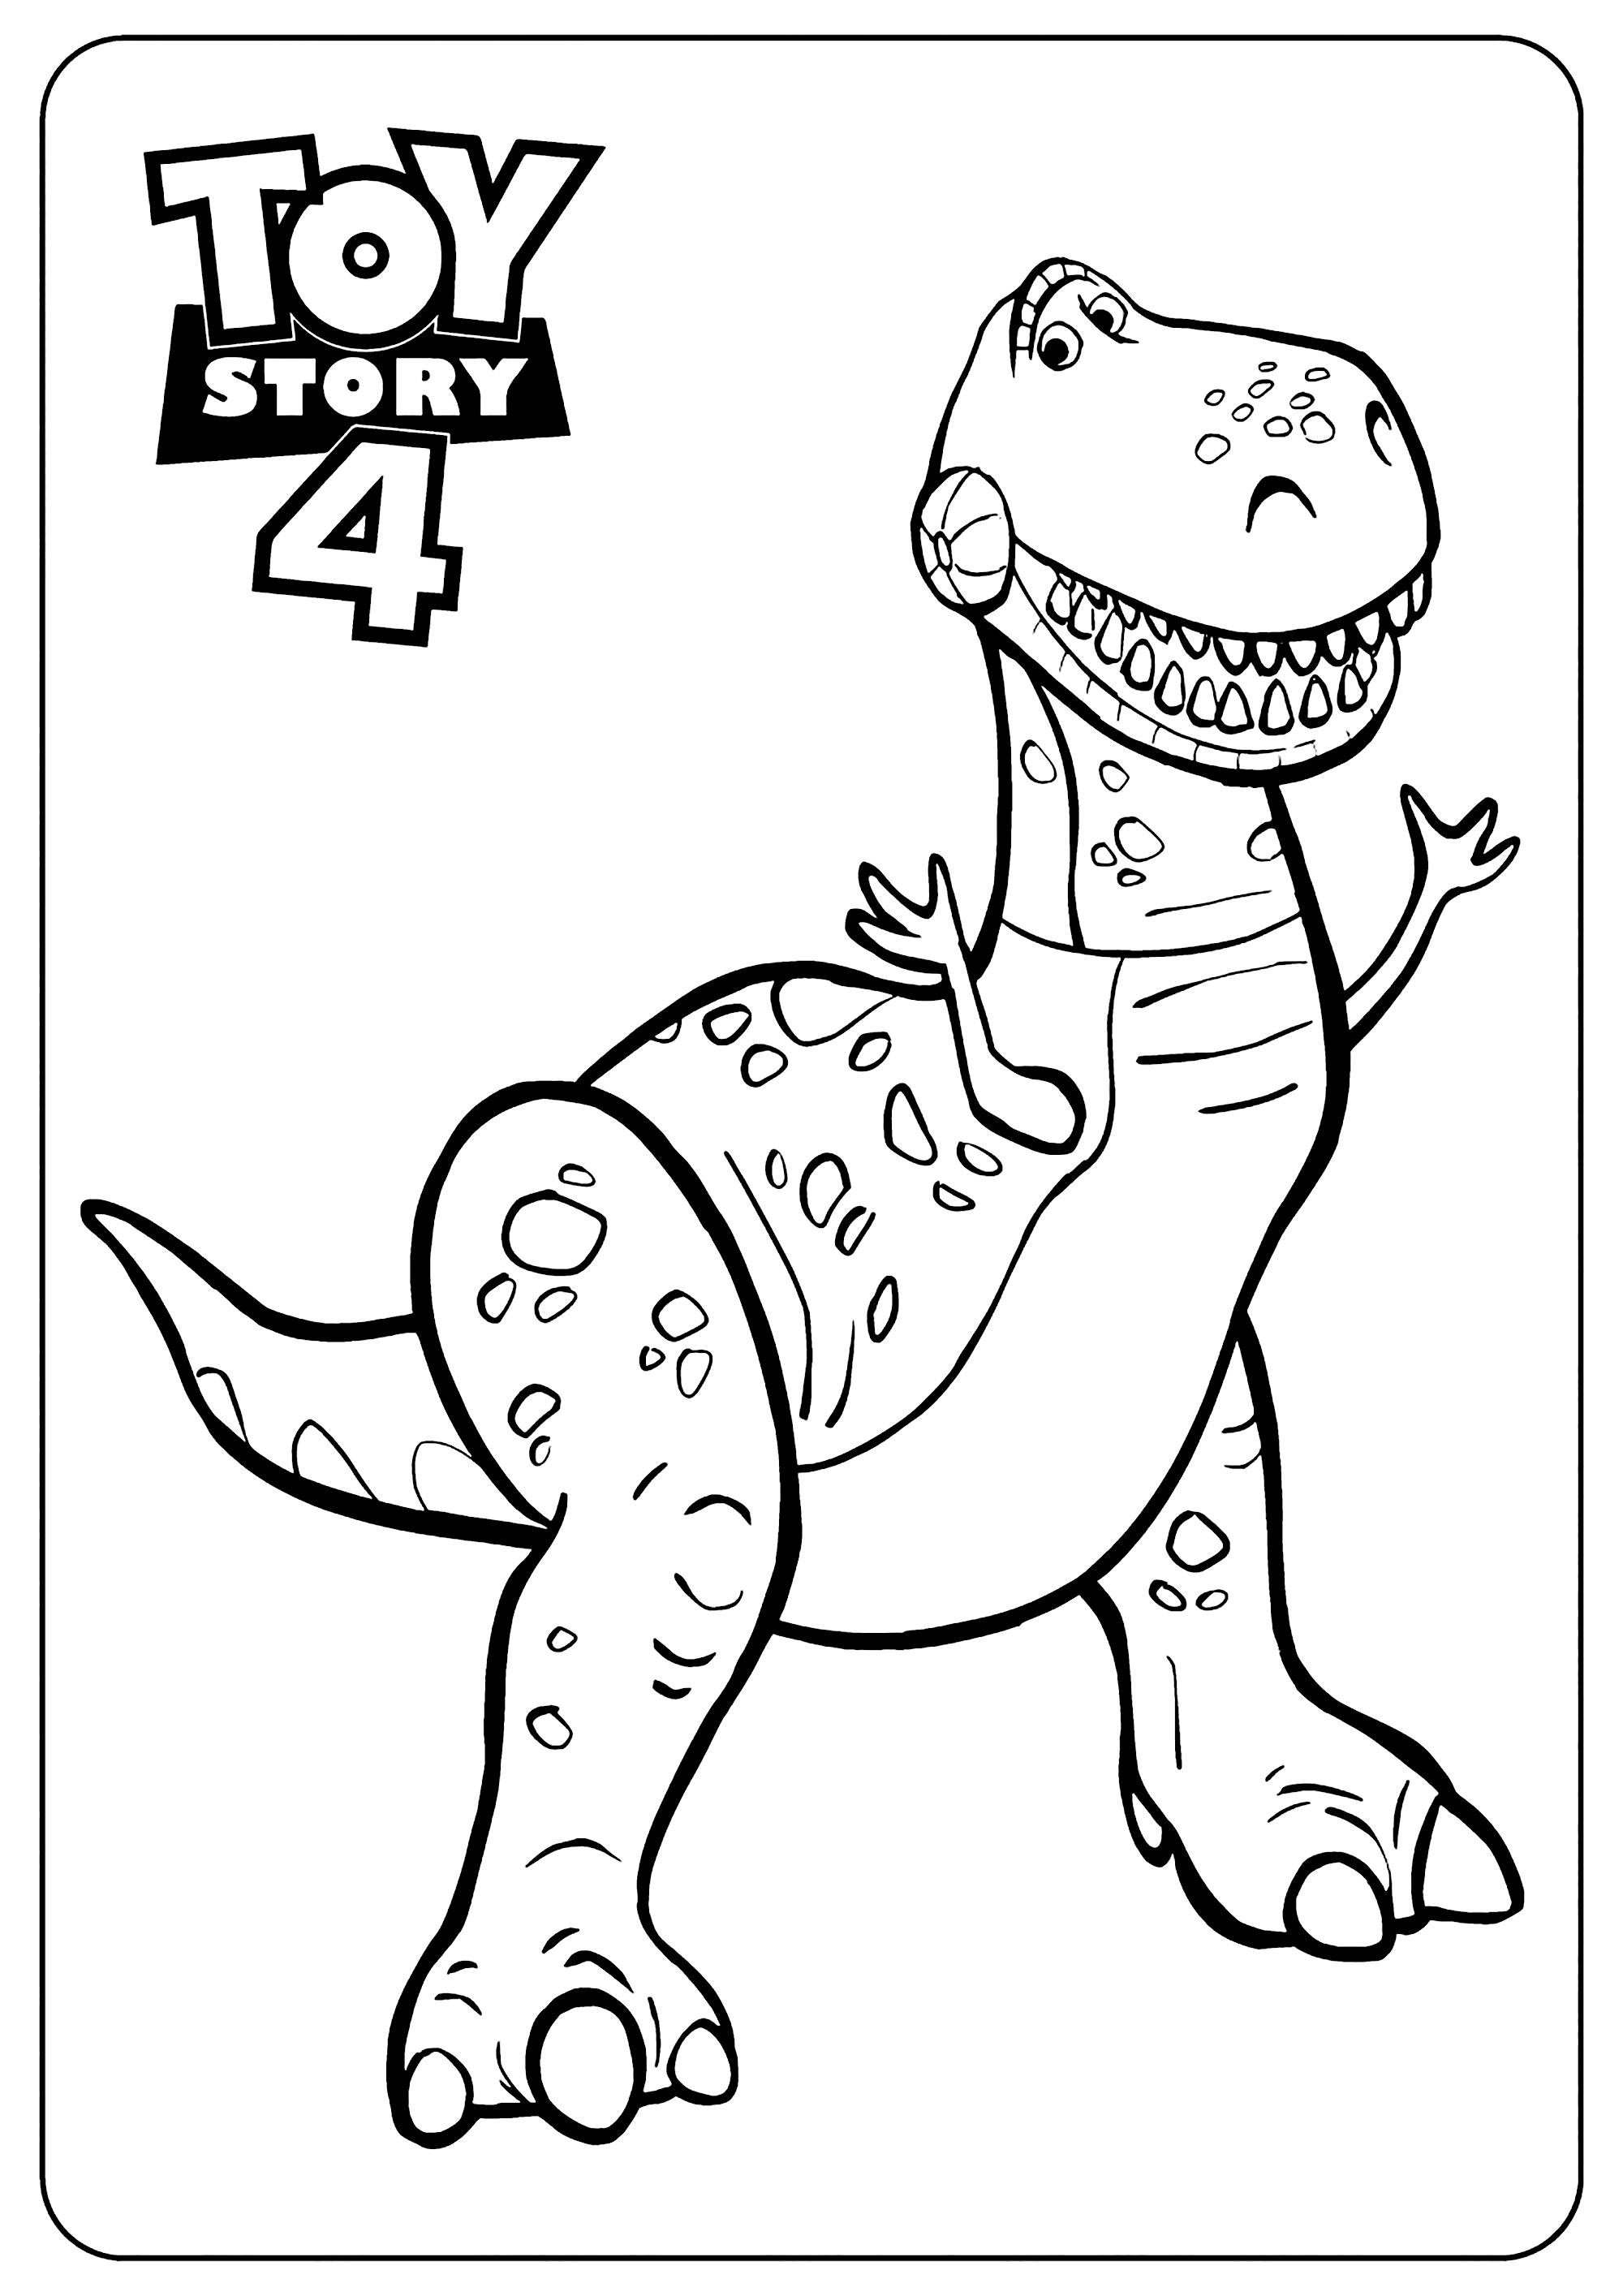 Image de Toy Story 4 à imprimer et à colorier : Dino